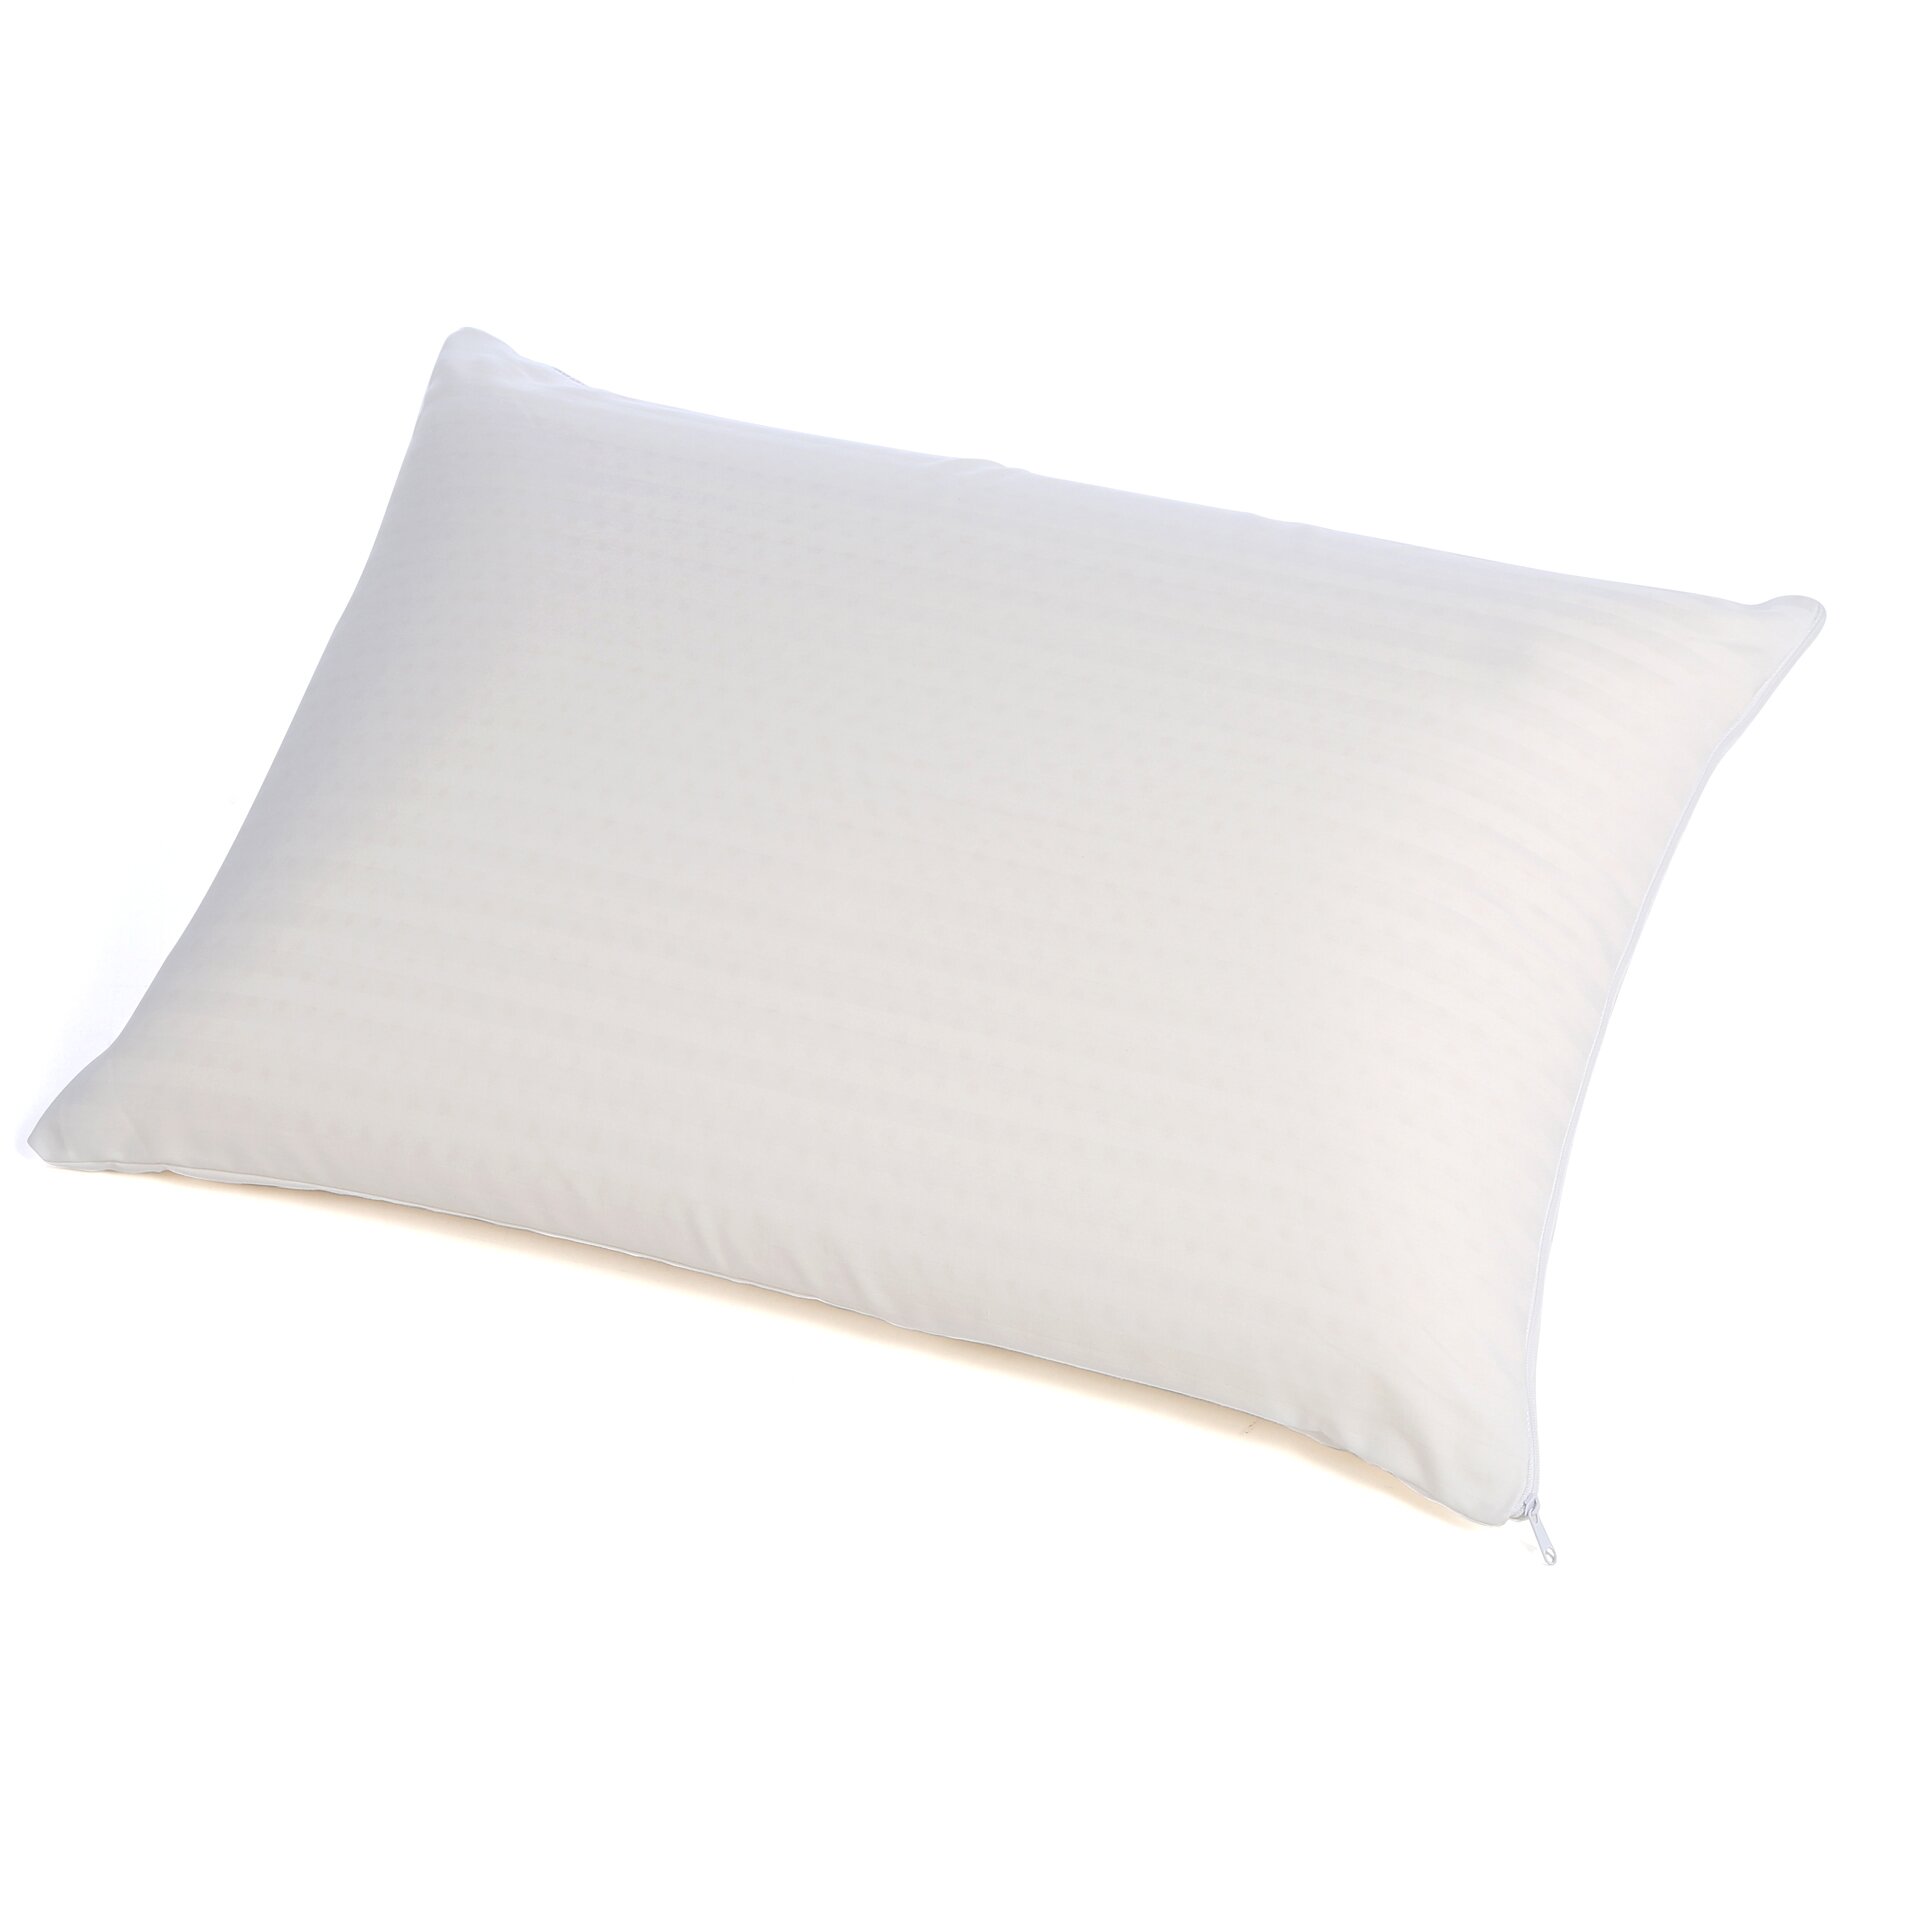 Beautyrest latex bed pillow